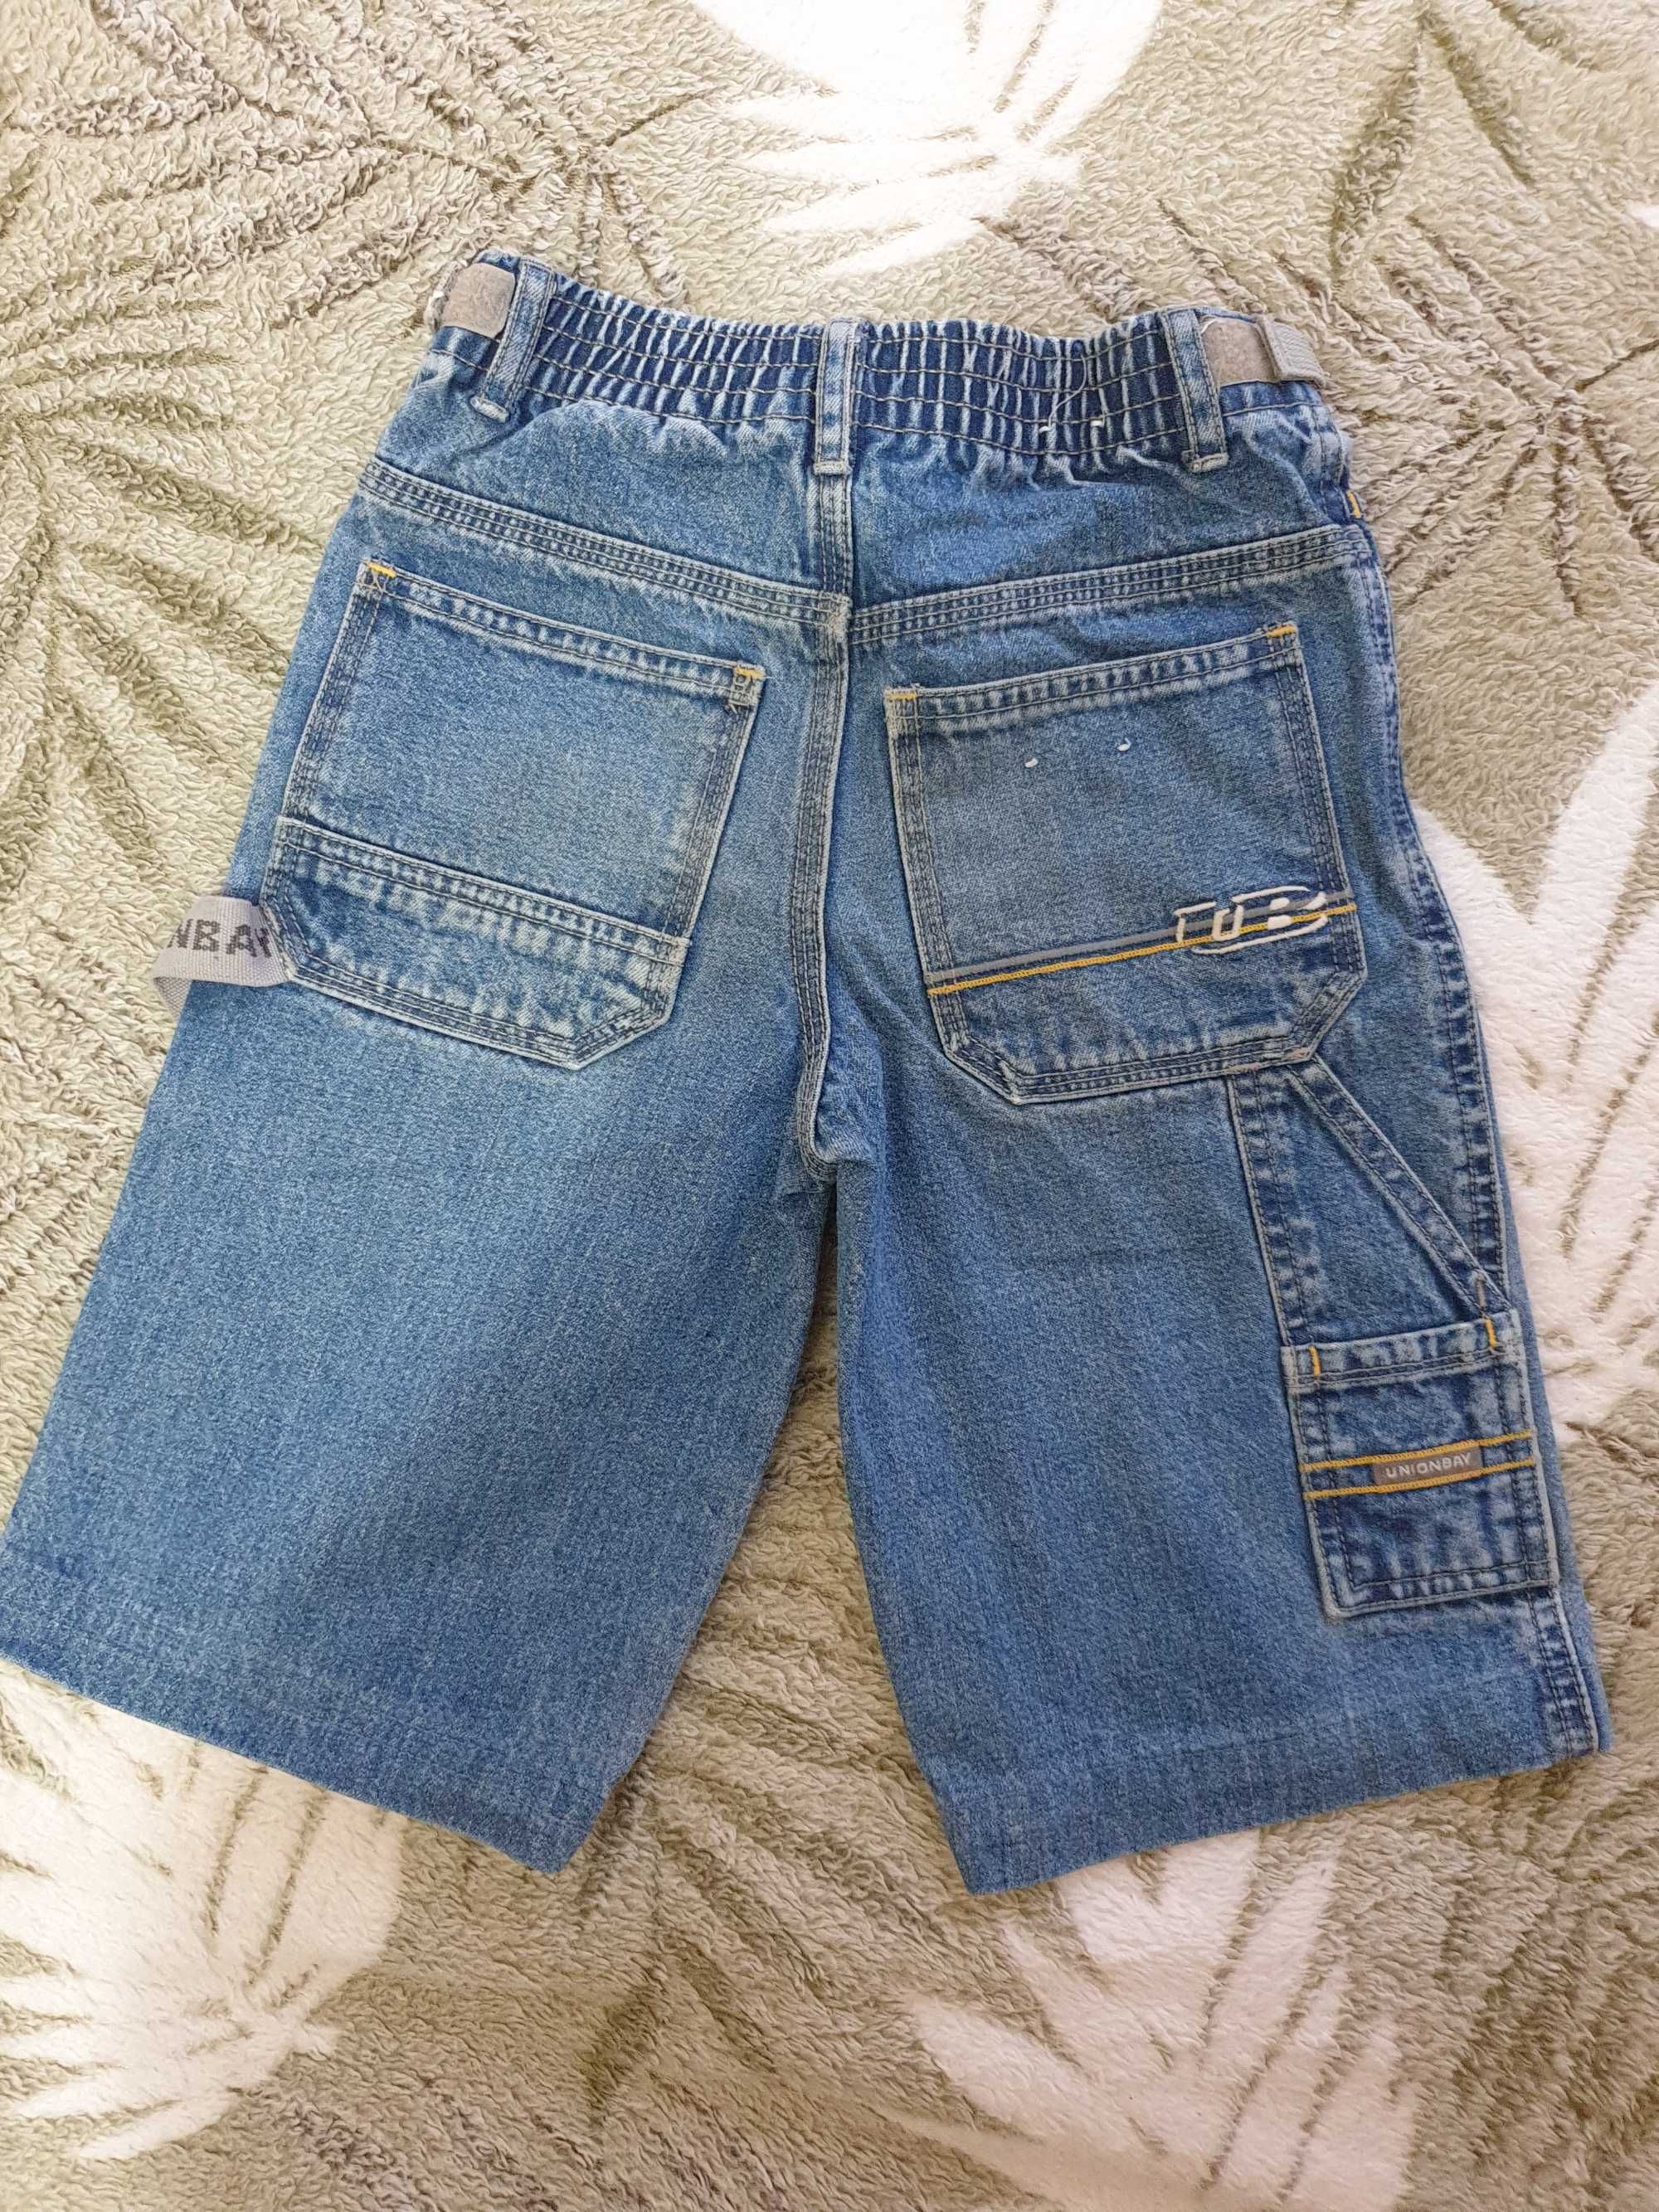 Шорты джинсовые и рубашки  на мальчика 5 -6 лет.